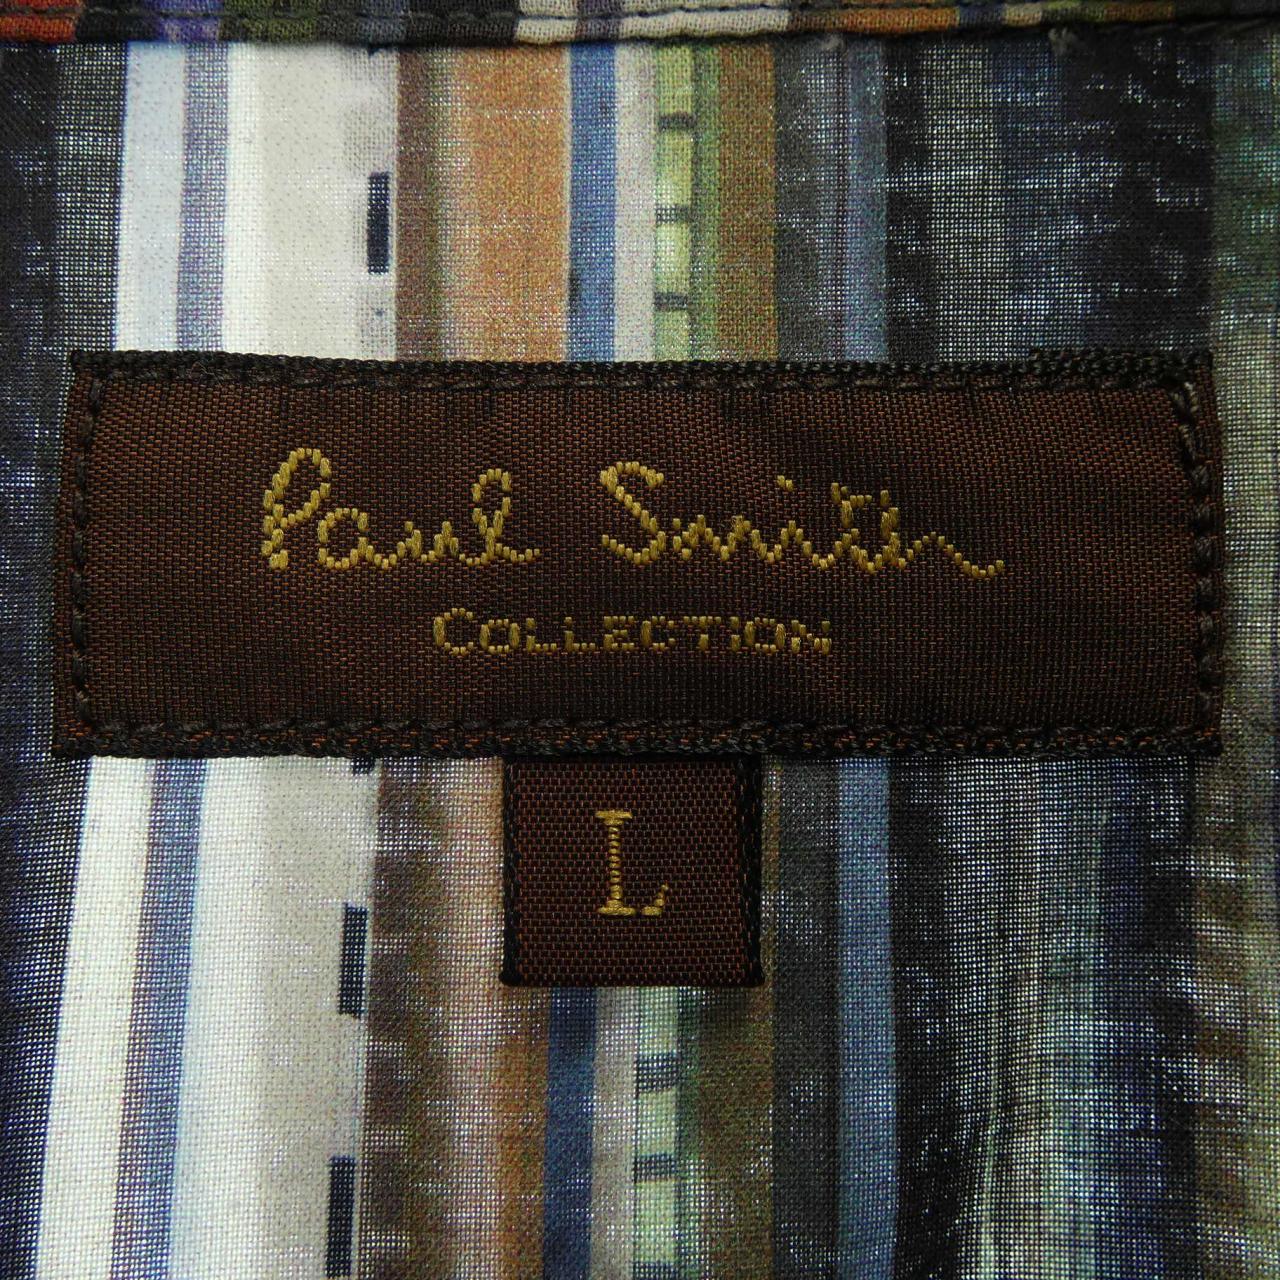 ポールスミスコレクション PaulSmith collection シャツ